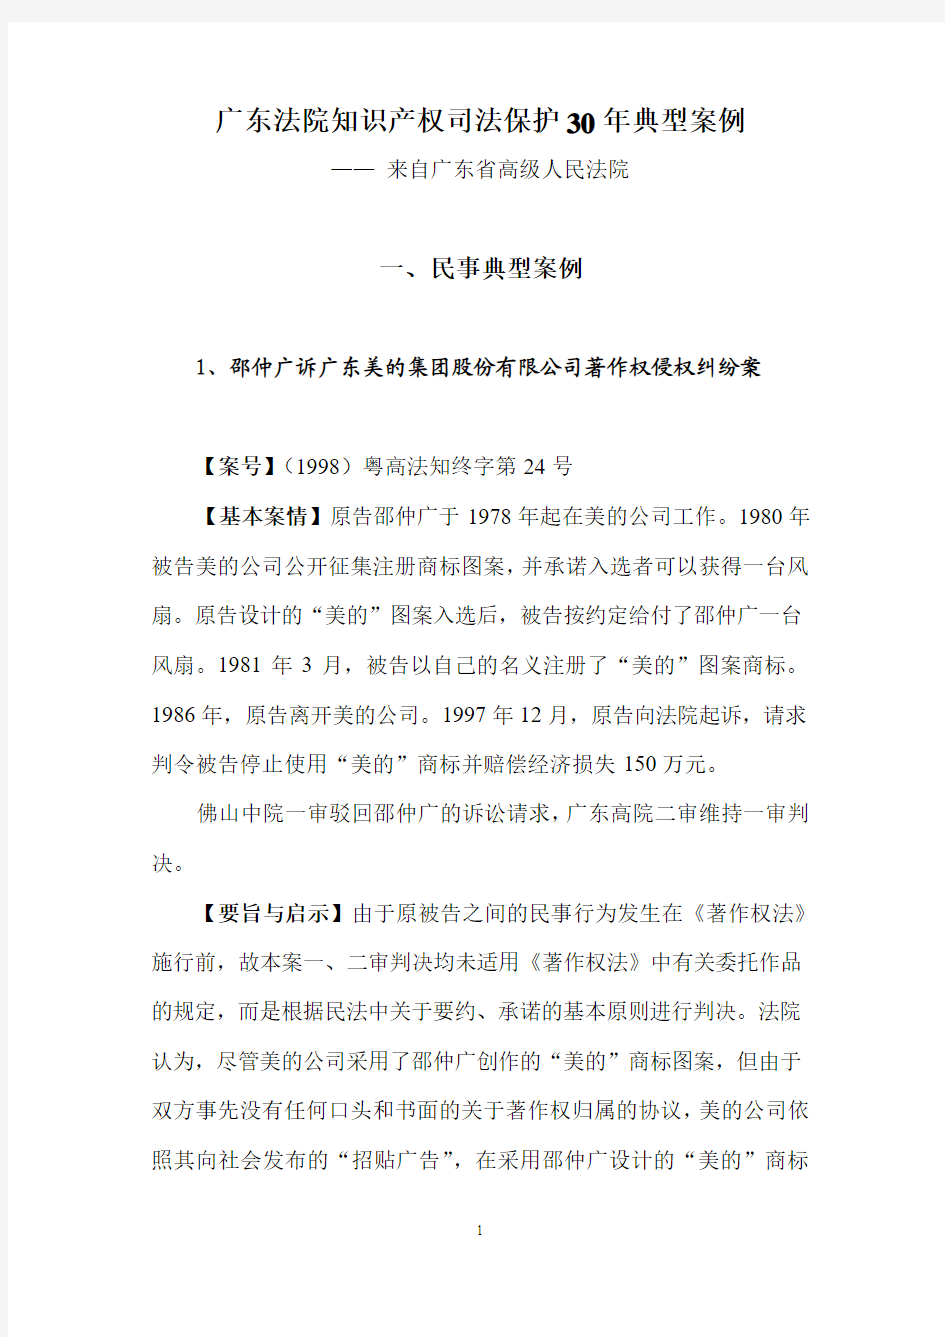 广东法院知识产权司法保护30年典型案例